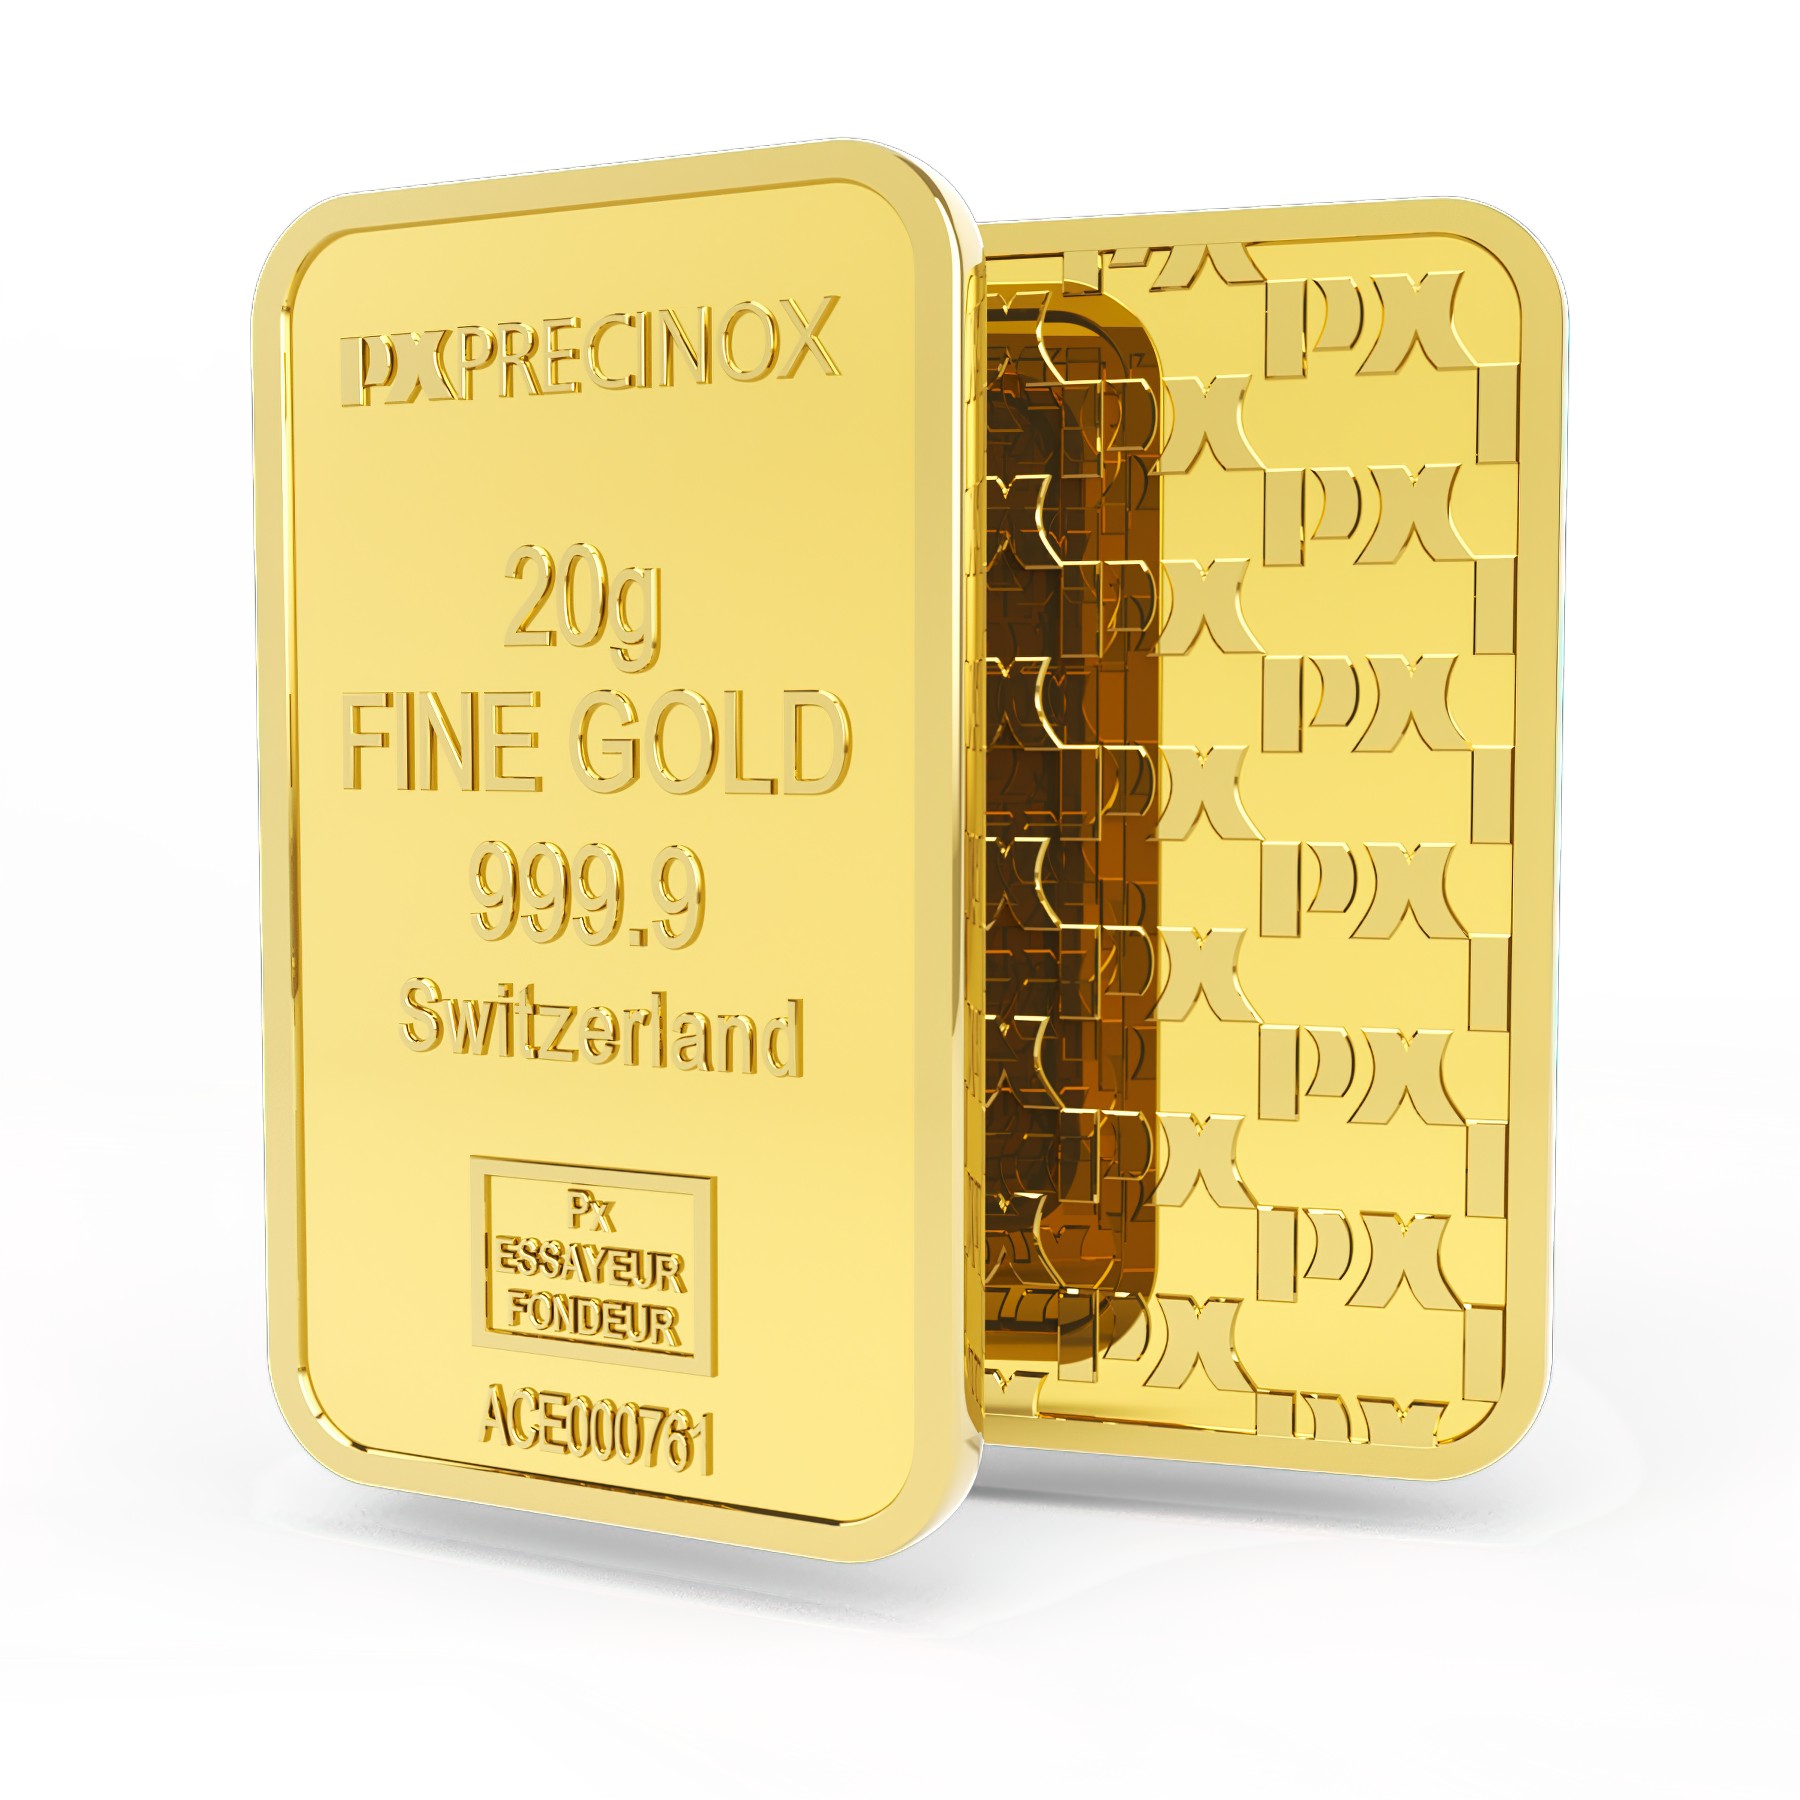 Sztabka złota 20g, Szwajcaria, Fine Gold 999.9